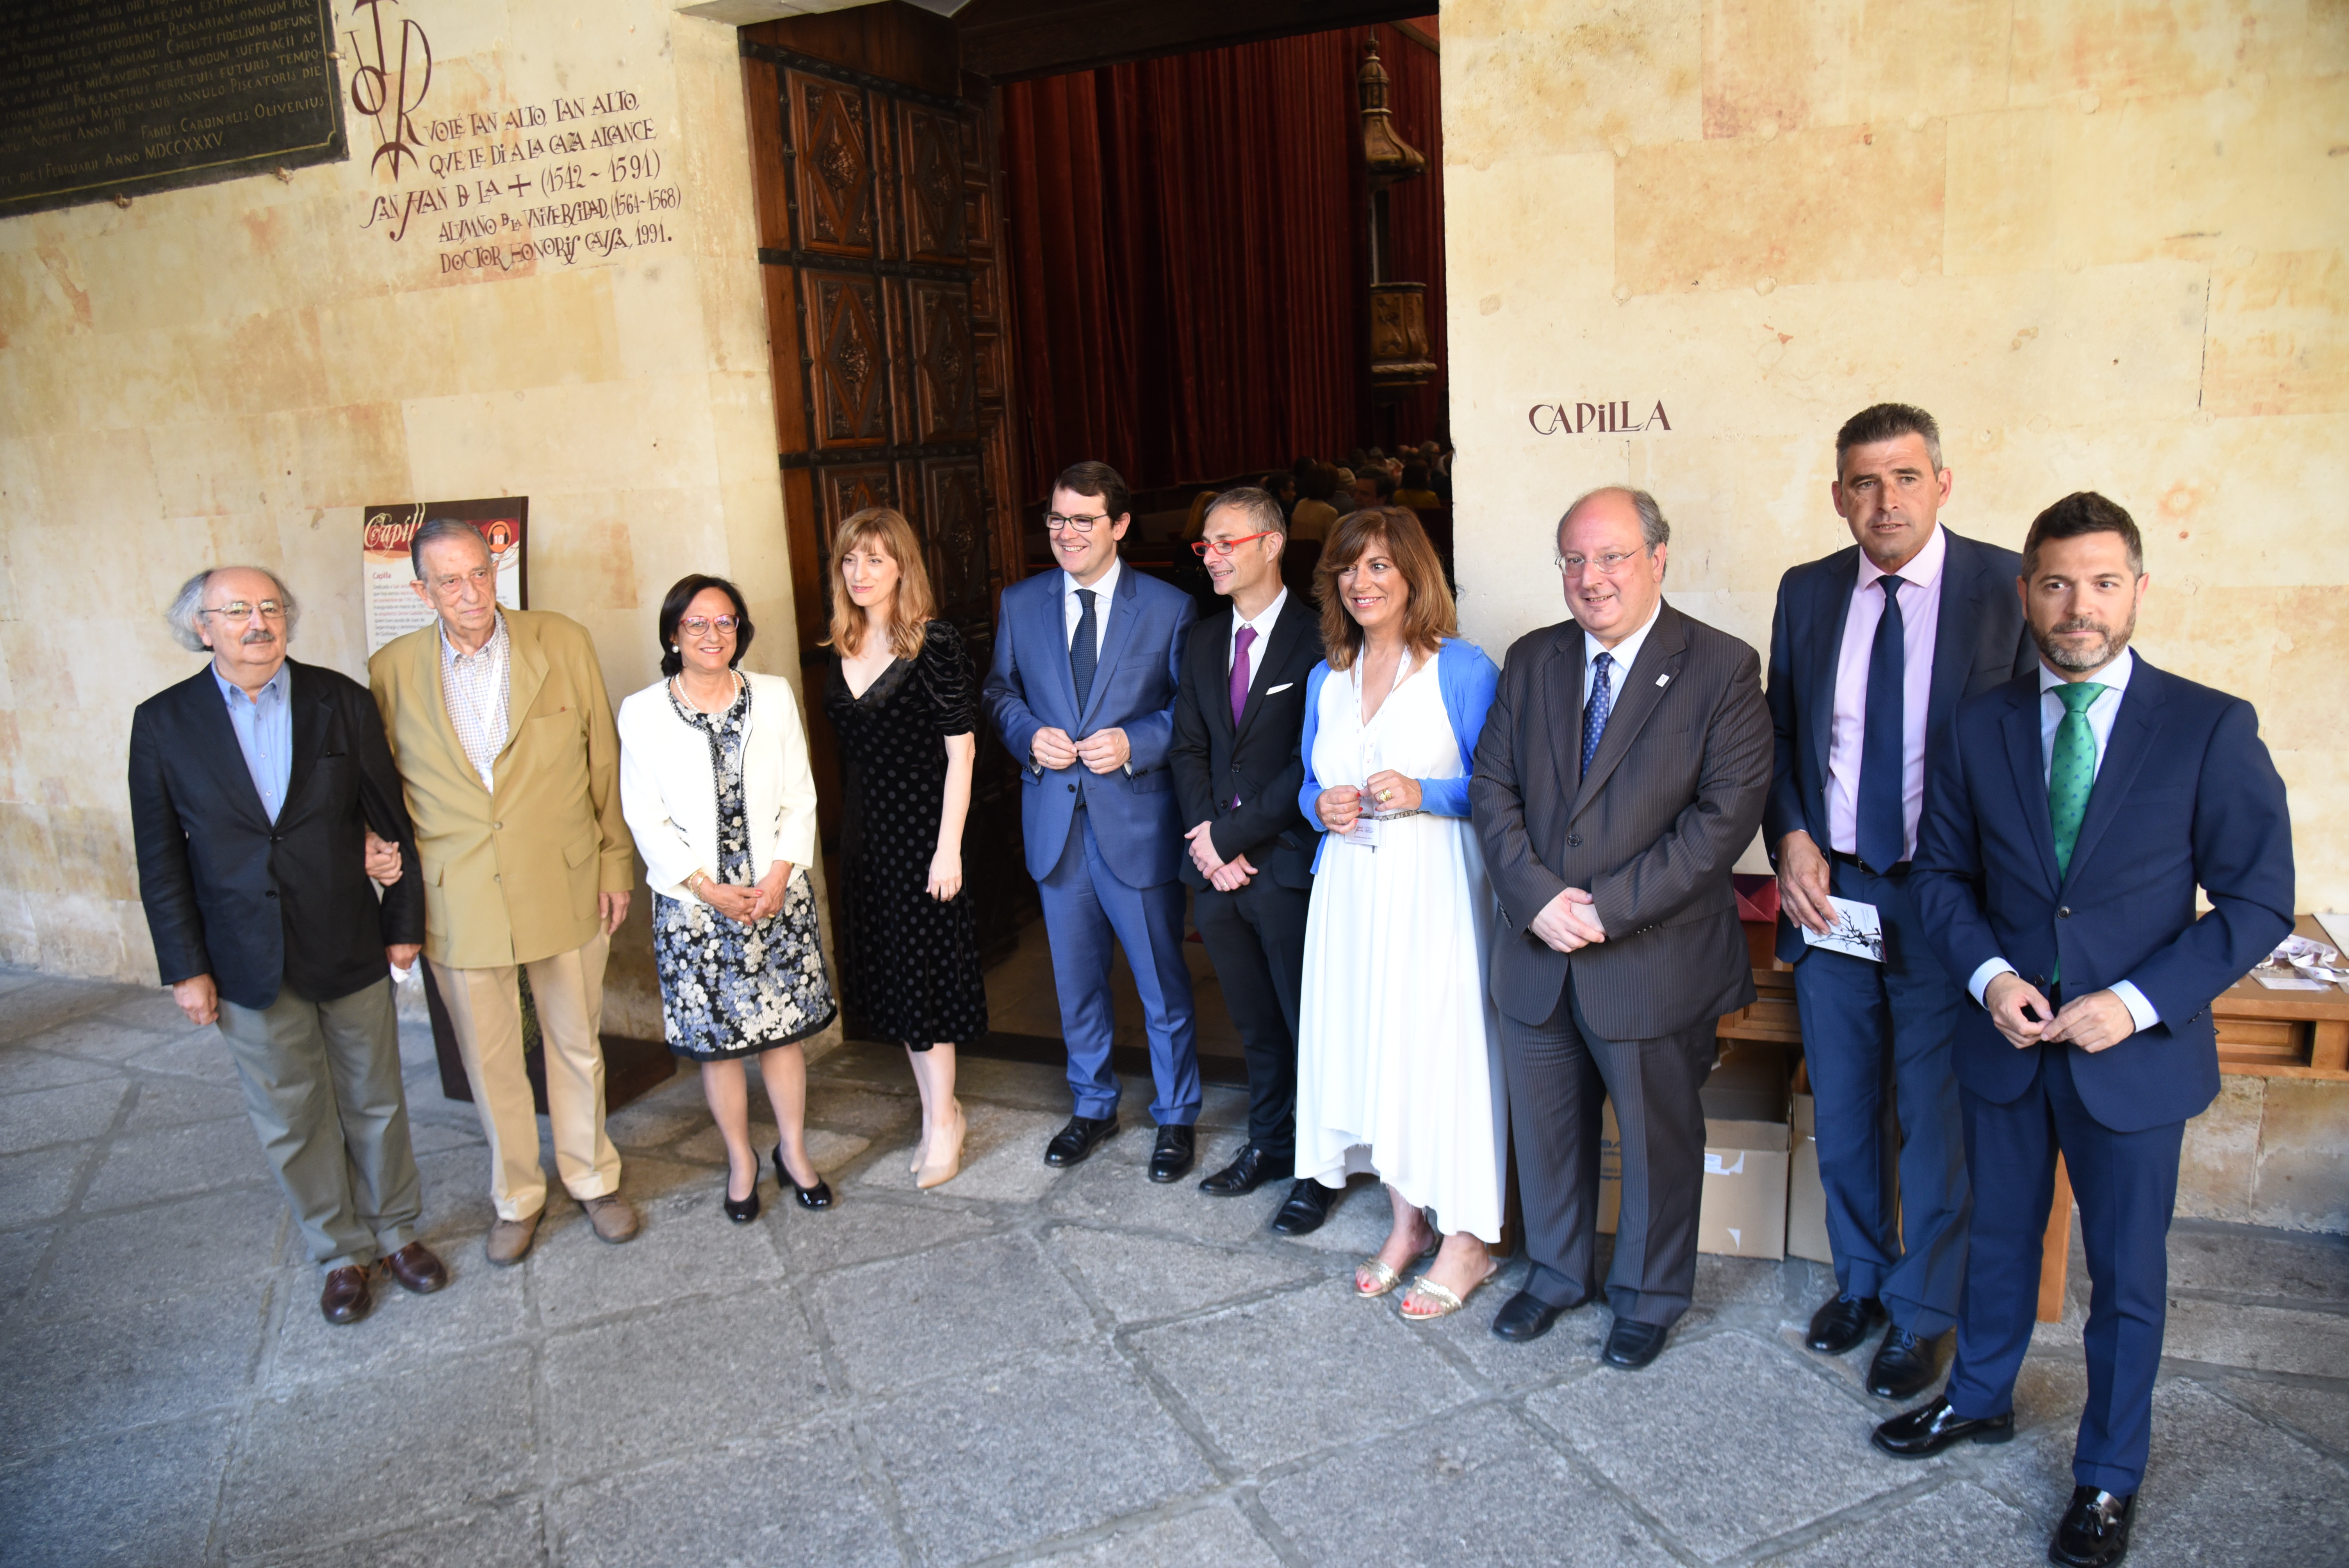 El Congreso Internacional de Poesía Fray Luis de León ‘Ab ipso ferro’ celebra en la Universidad de Salamanca la ceremonia de inauguración de dos jornadas dedicadas a la poesía con motivo del VIII Centenario